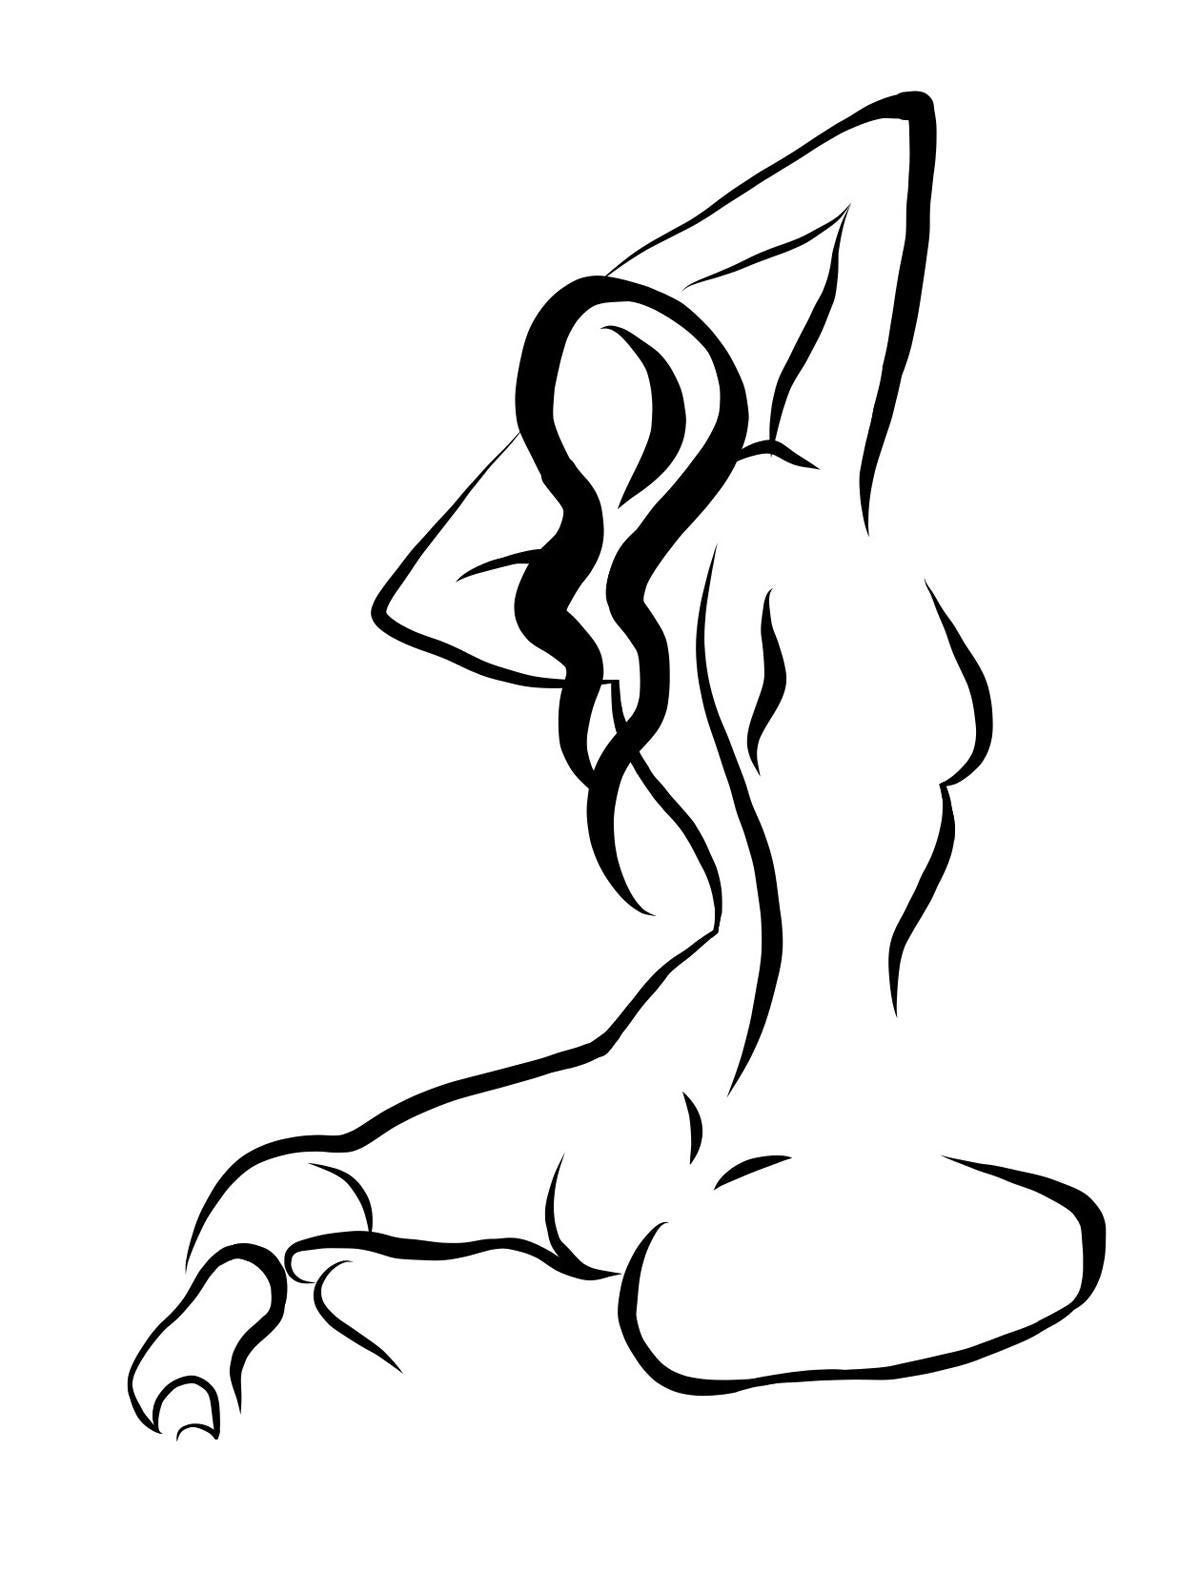 Michael Binkley Nude Print - Haiku #17 - Digital Vector Drawing of Seated Female Nude from Behind